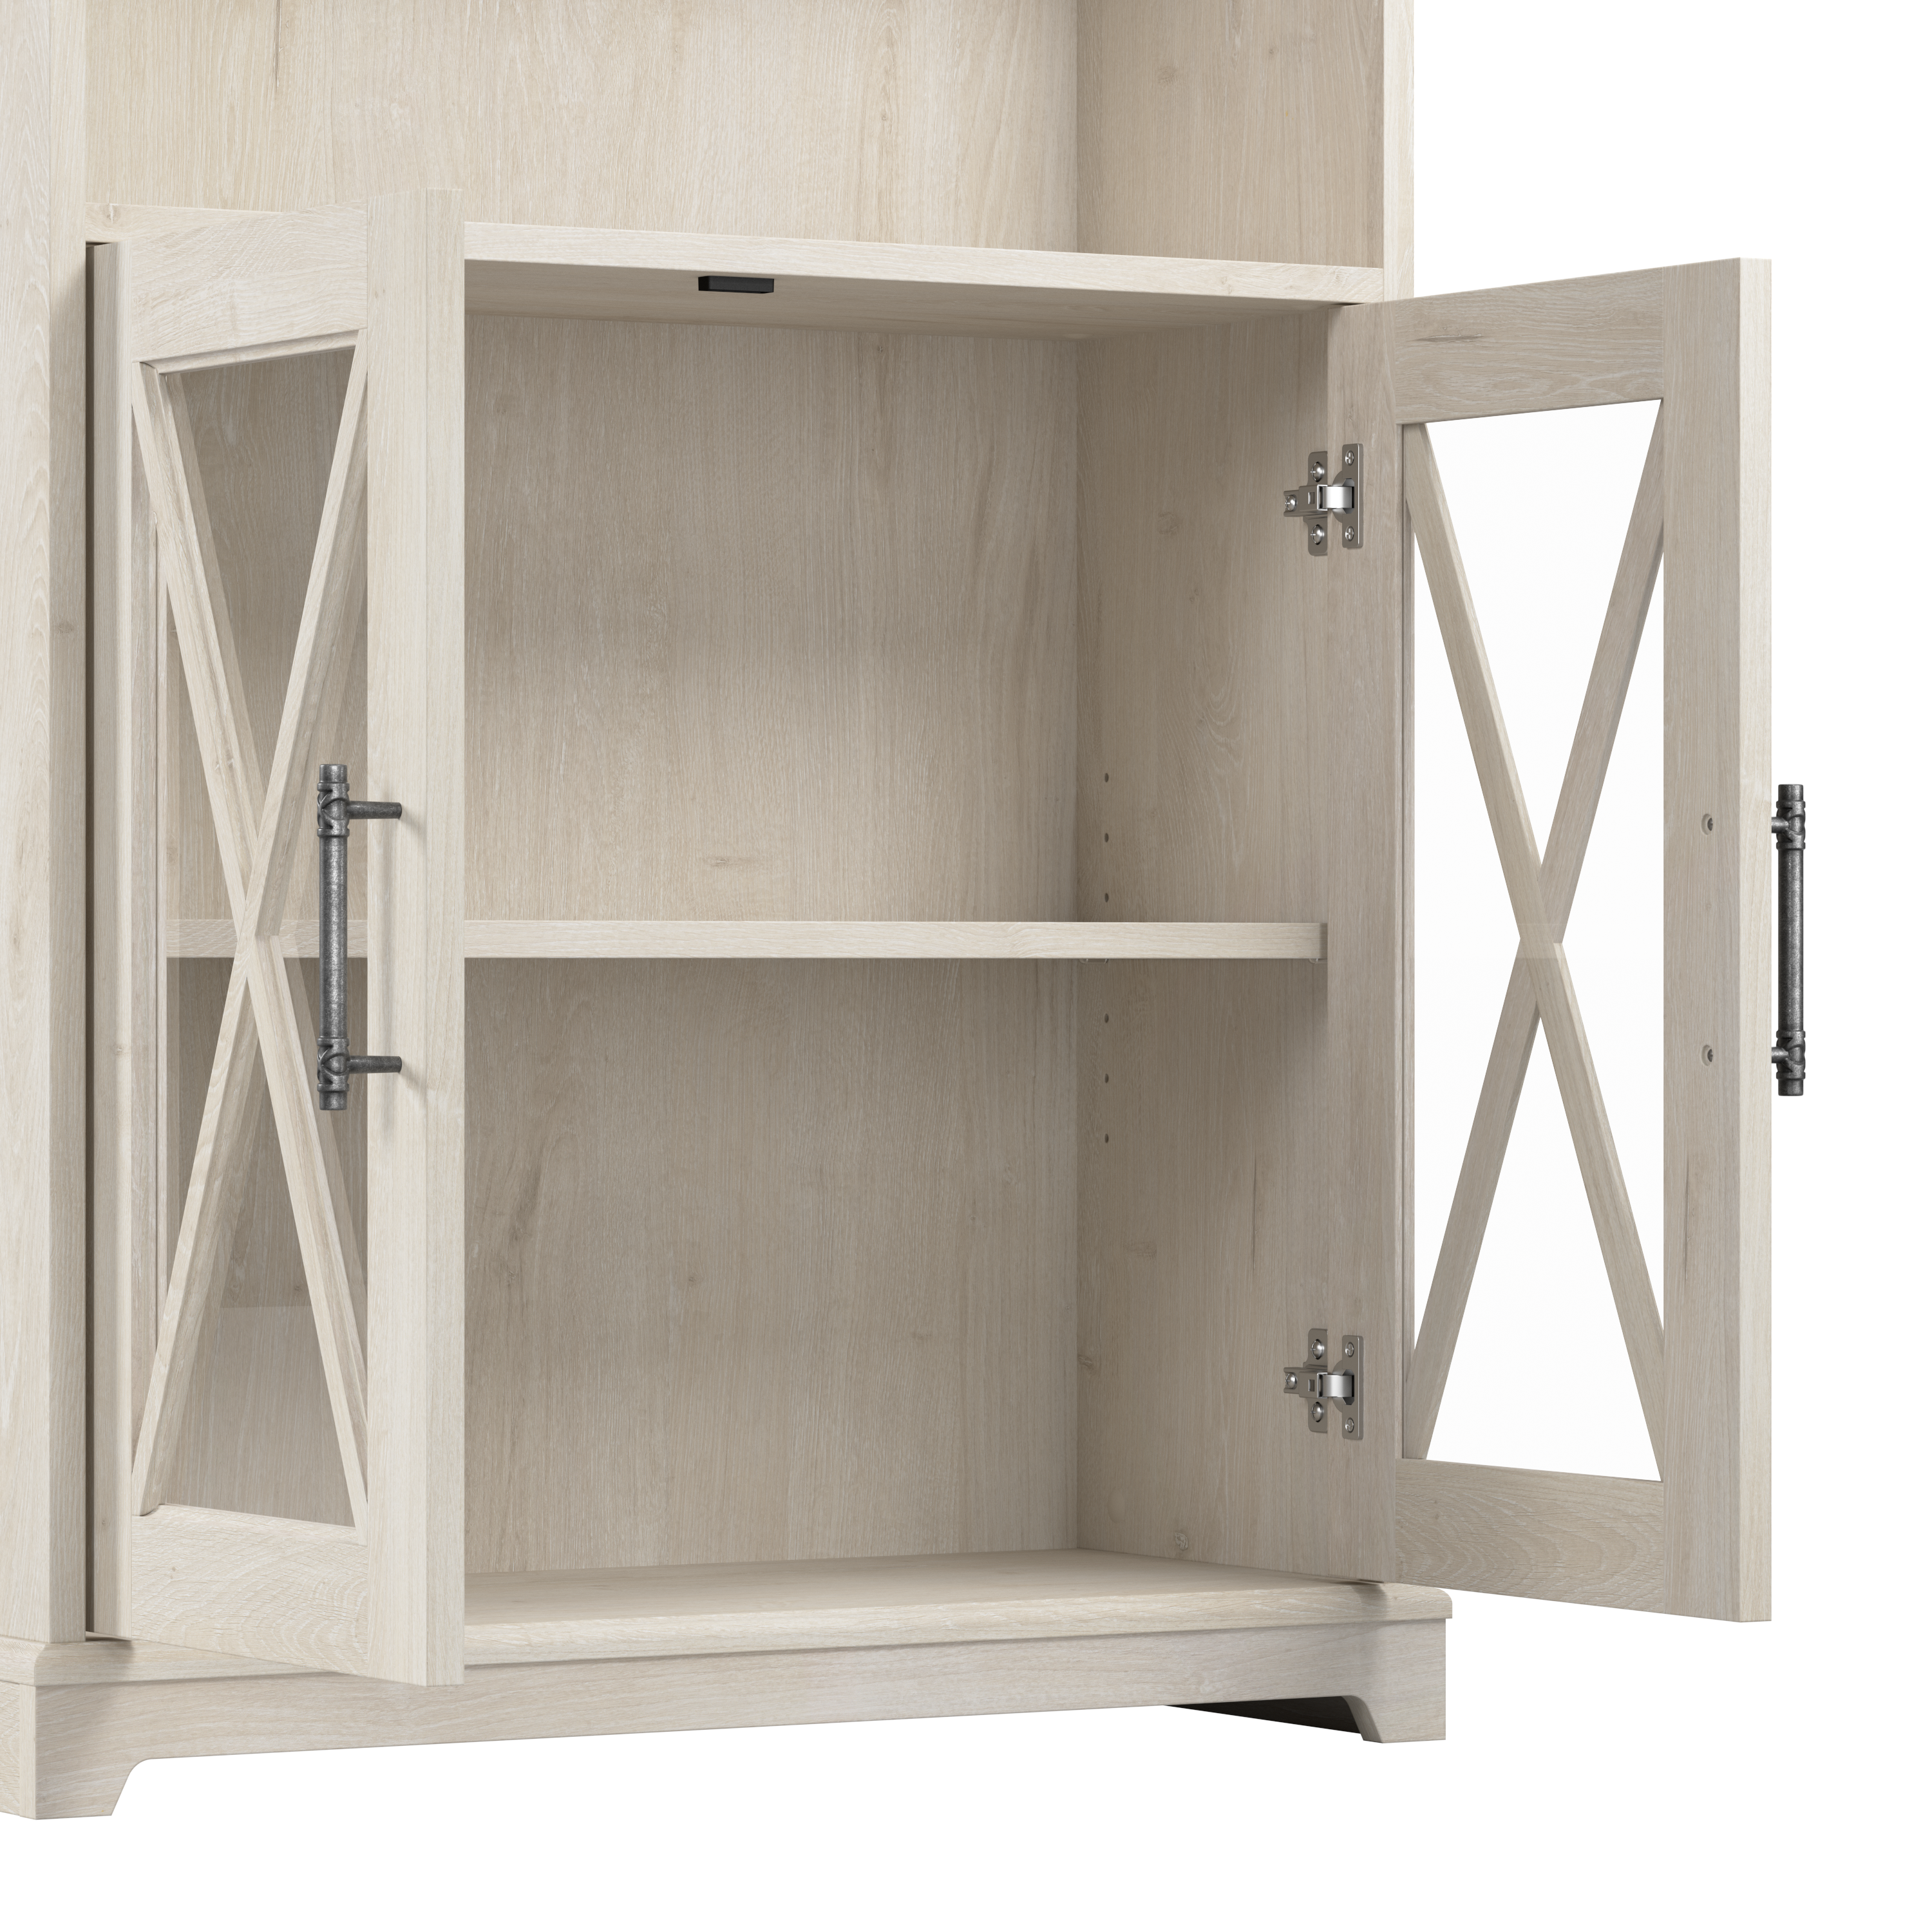 Shop Bush Furniture Lennox Farmhouse 5 Shelf Bookcase with Glass Doors - Set of 2 03 LEN001LW #color_linen white oak